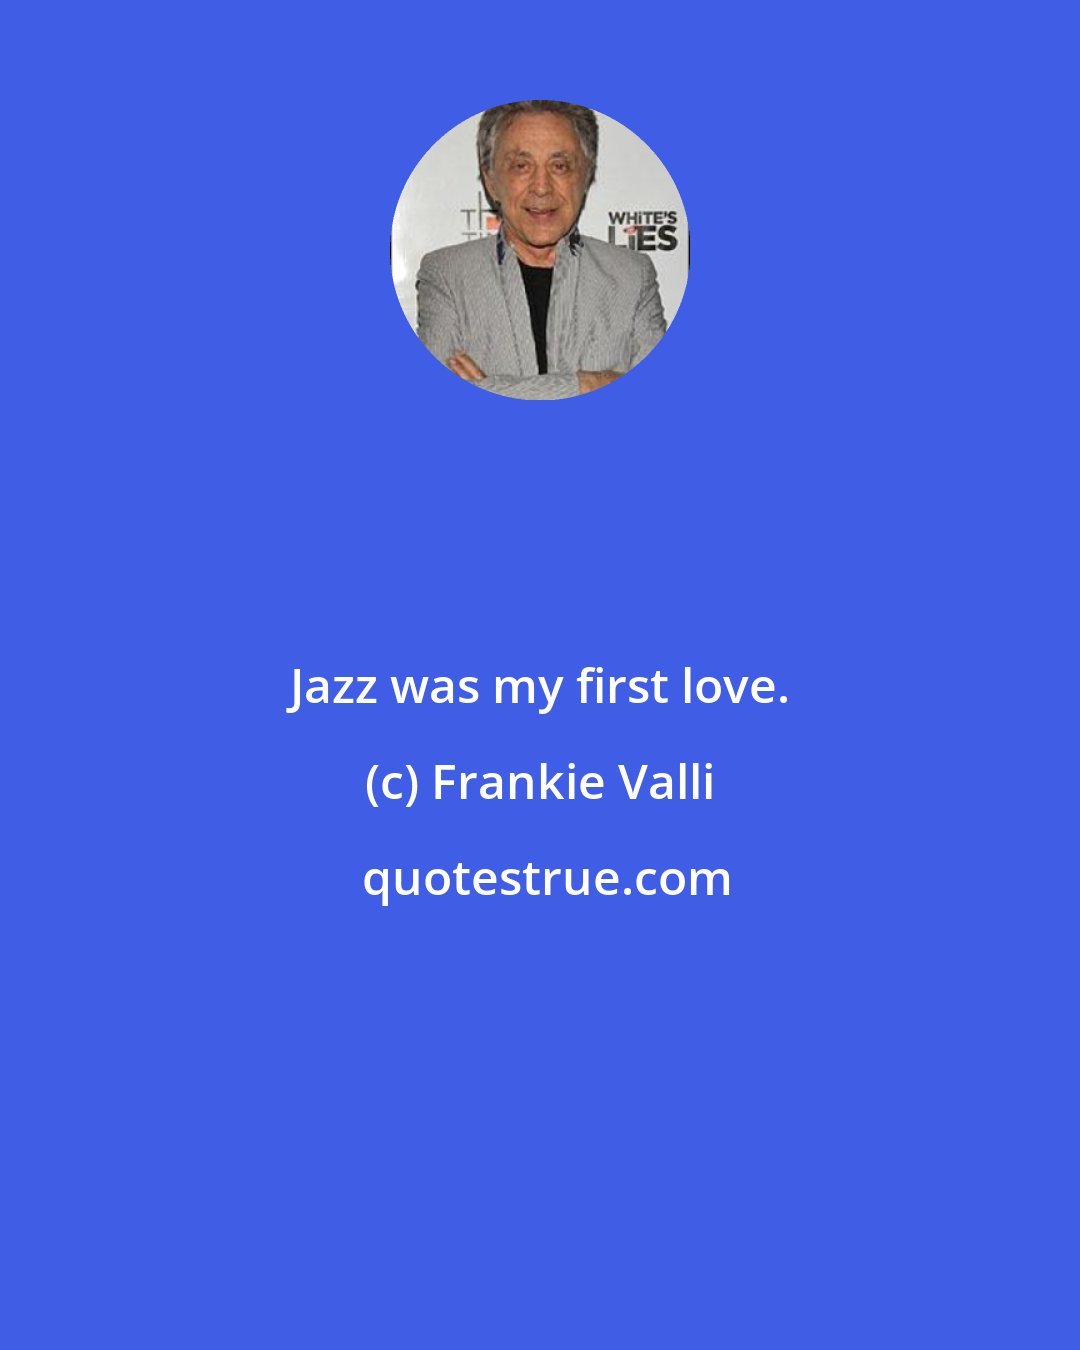 Frankie Valli: Jazz was my first love.